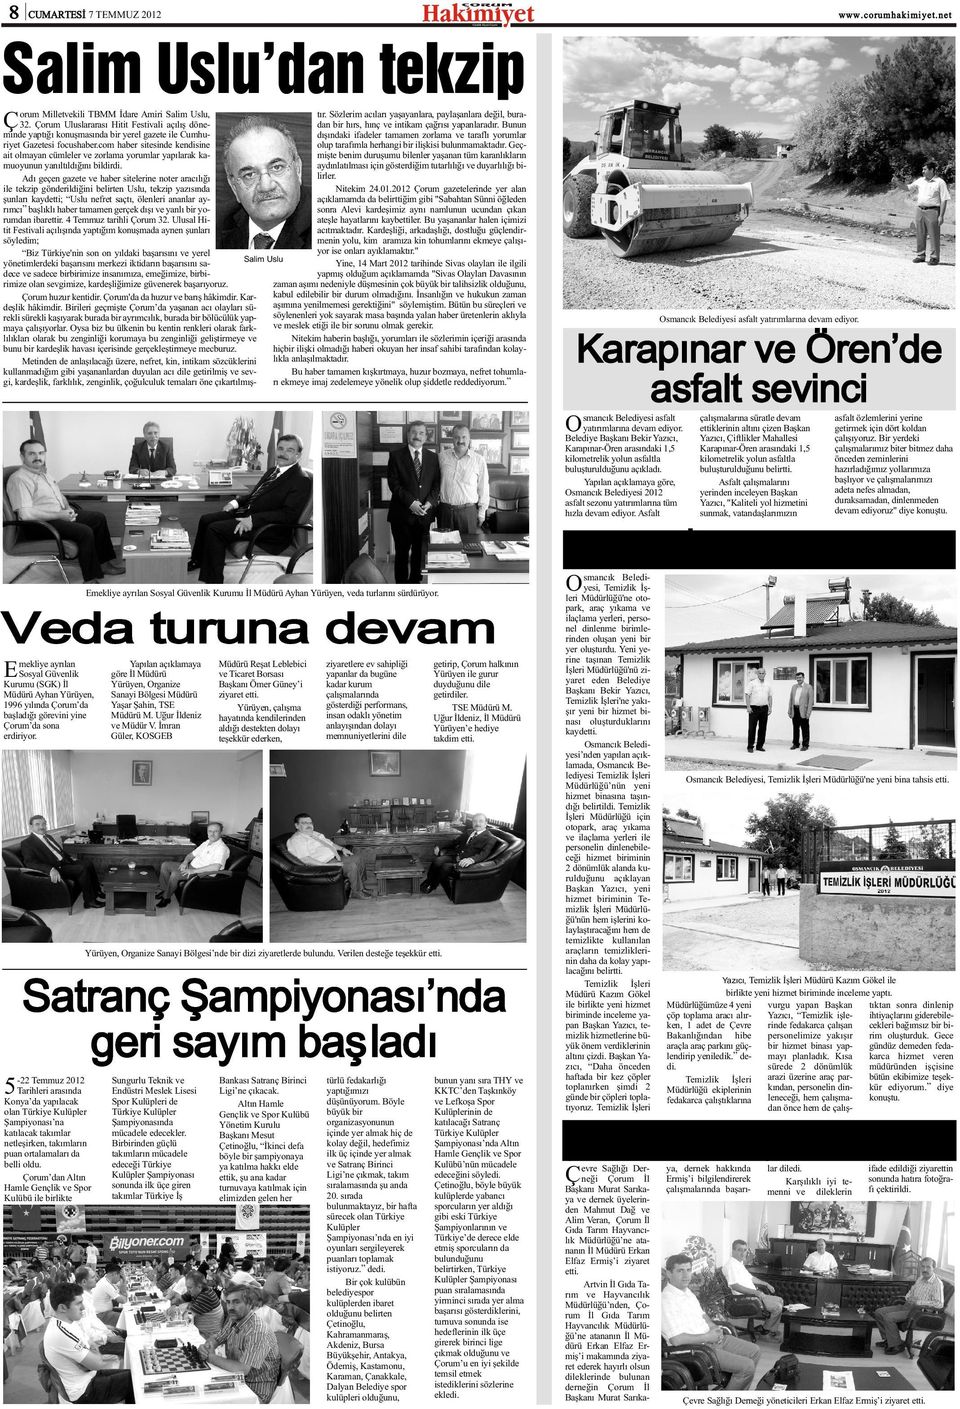 Bunun minde yaptýðý konuþmasýnda bir yerel gazete ile Cumhudýþýndaki ifadeler tamamen zorlama ve taraflý yorumlar riyet Gazetesi focushaber.